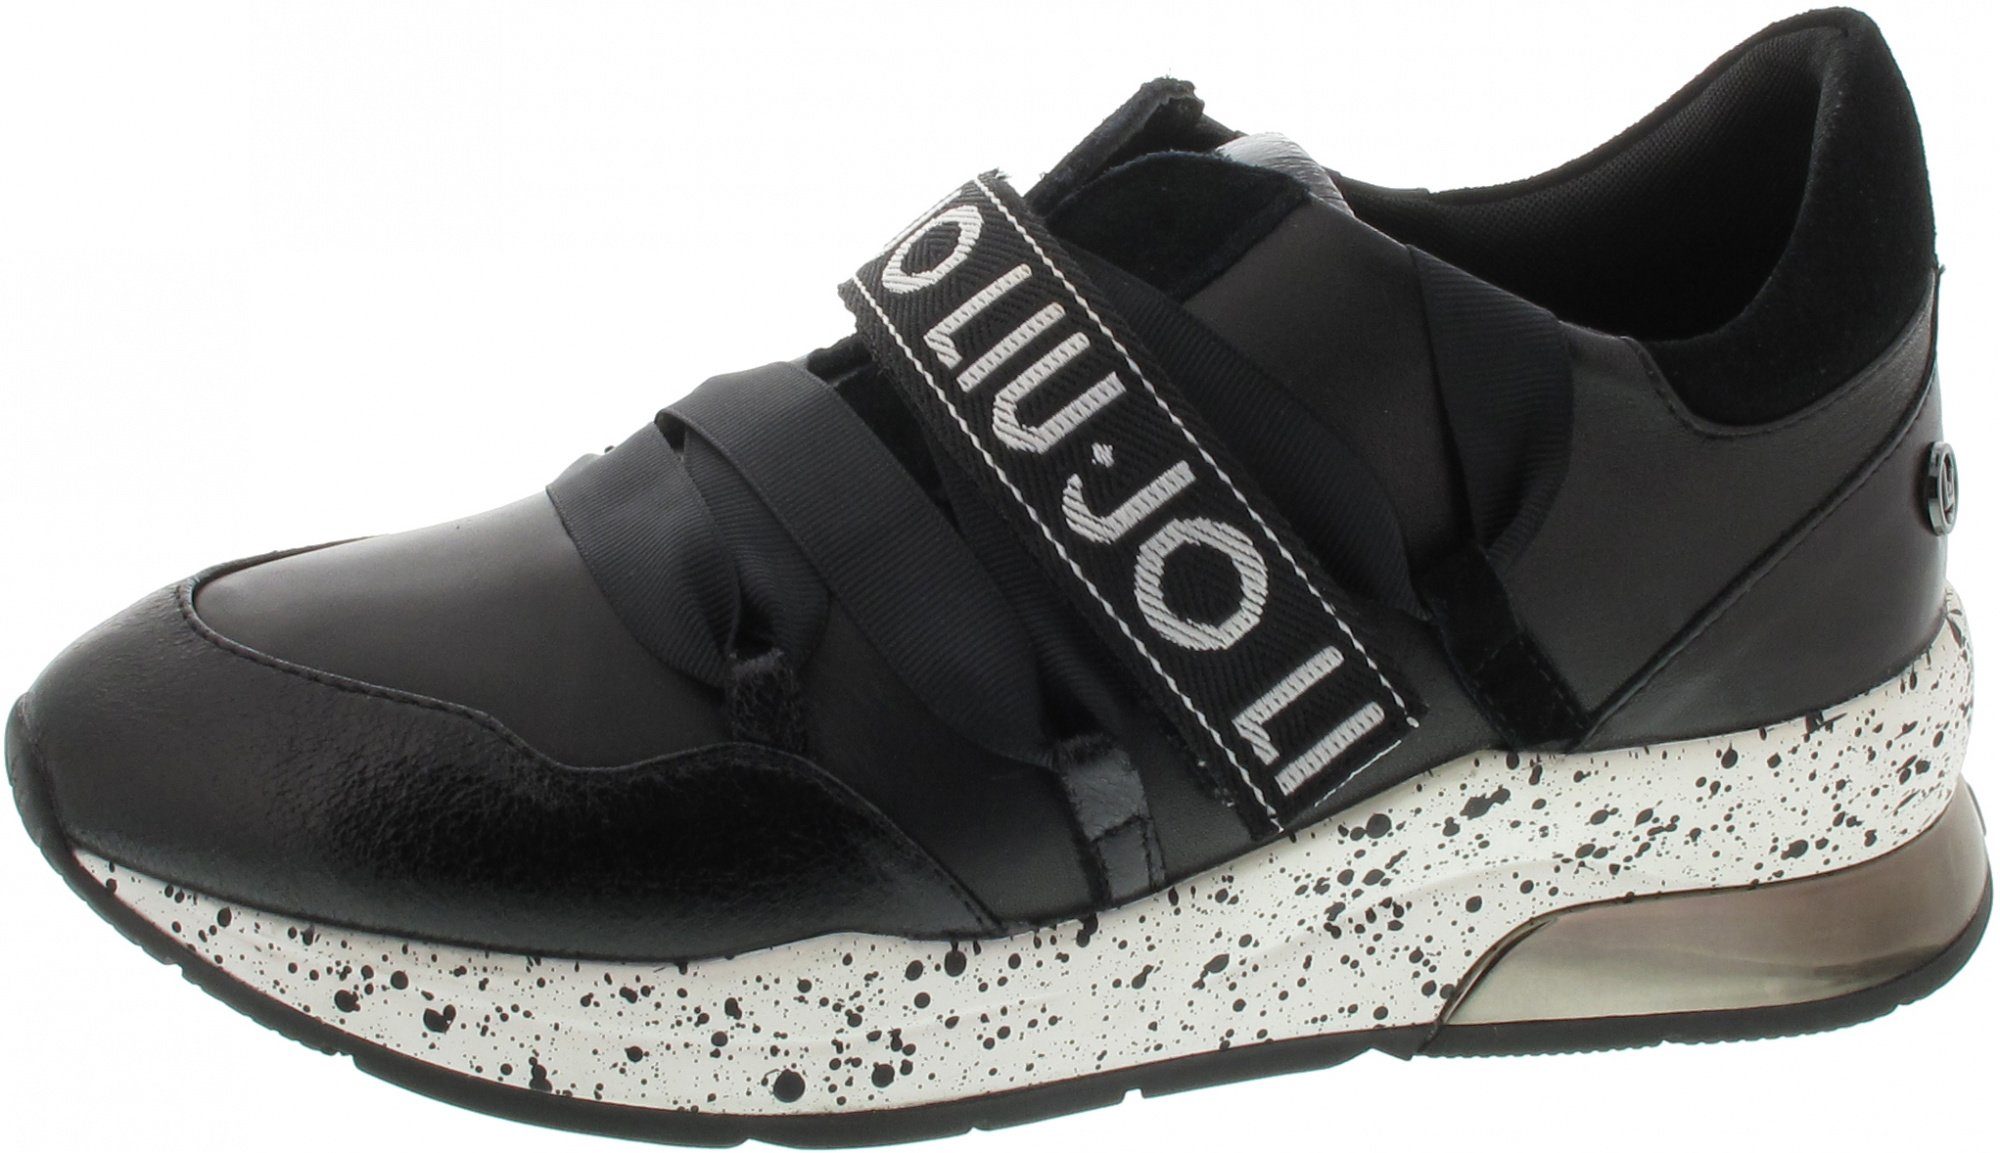 Liu Jo Karlie 03 Sneaker, schwarz online kaufen | OTTO